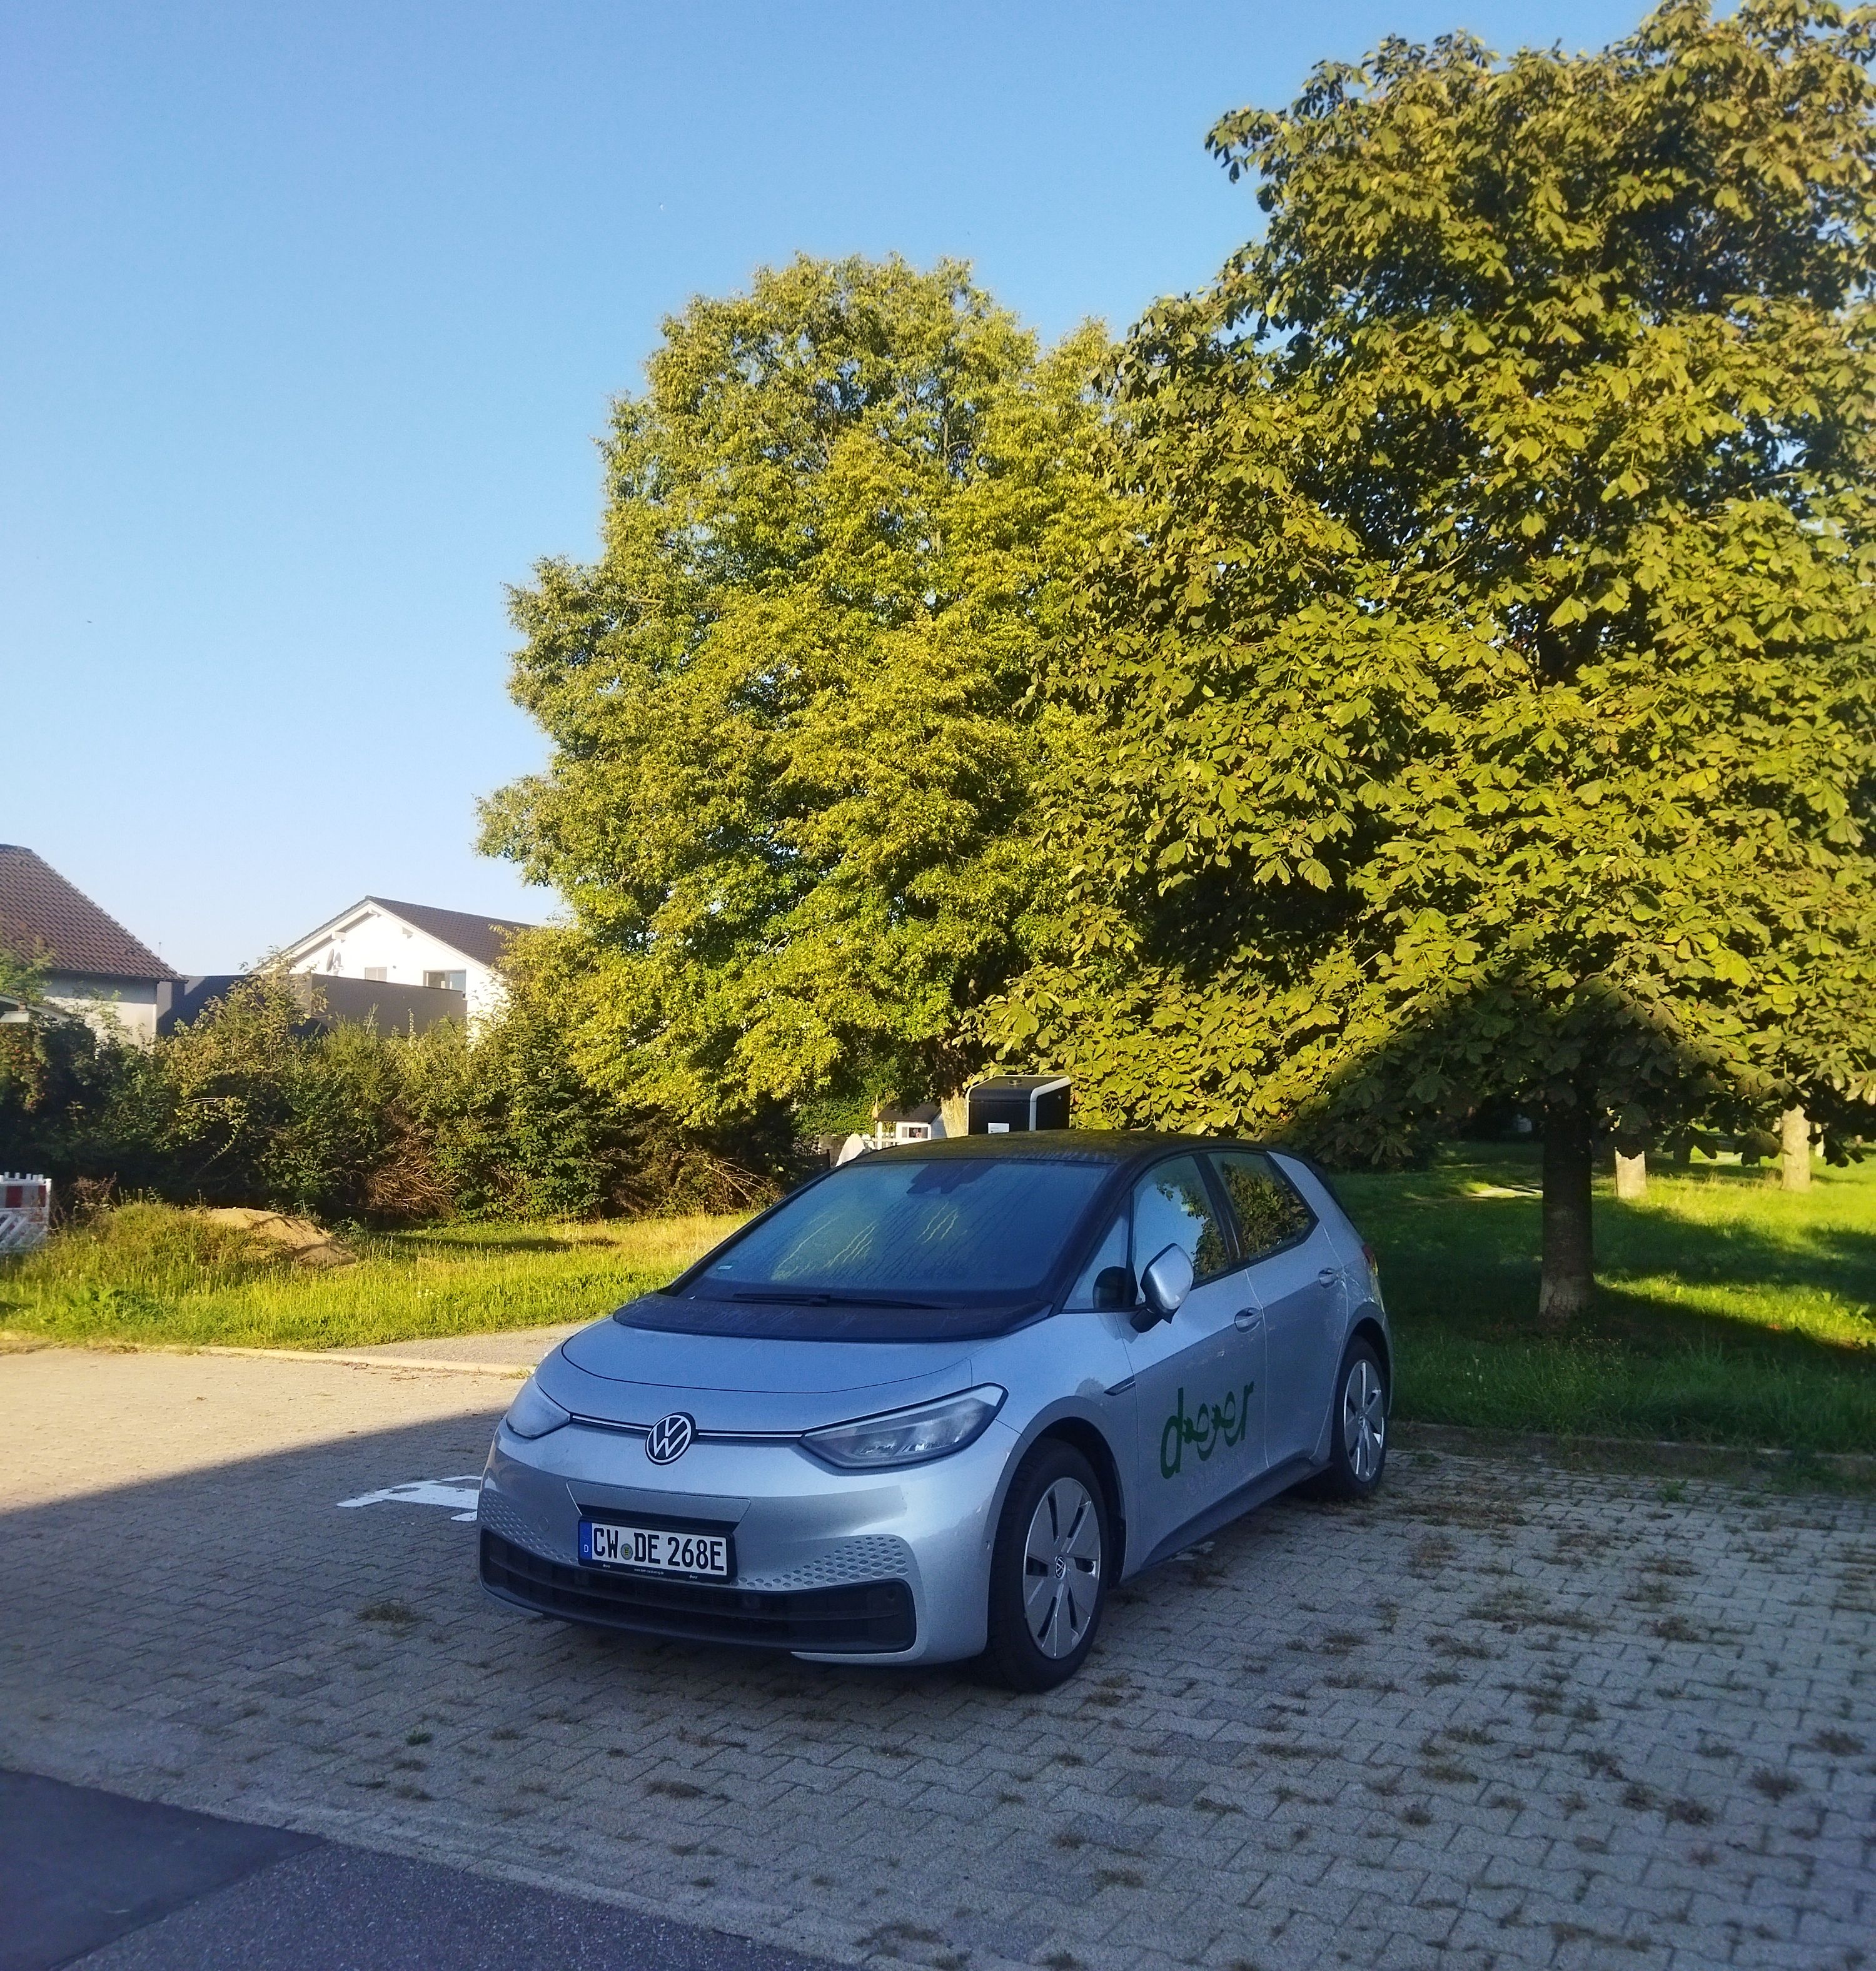  Ein Carsharing-Fahrzeug am Standort Birkenstraße in Berwangen - das Bild wird mit Klick vergrößert 